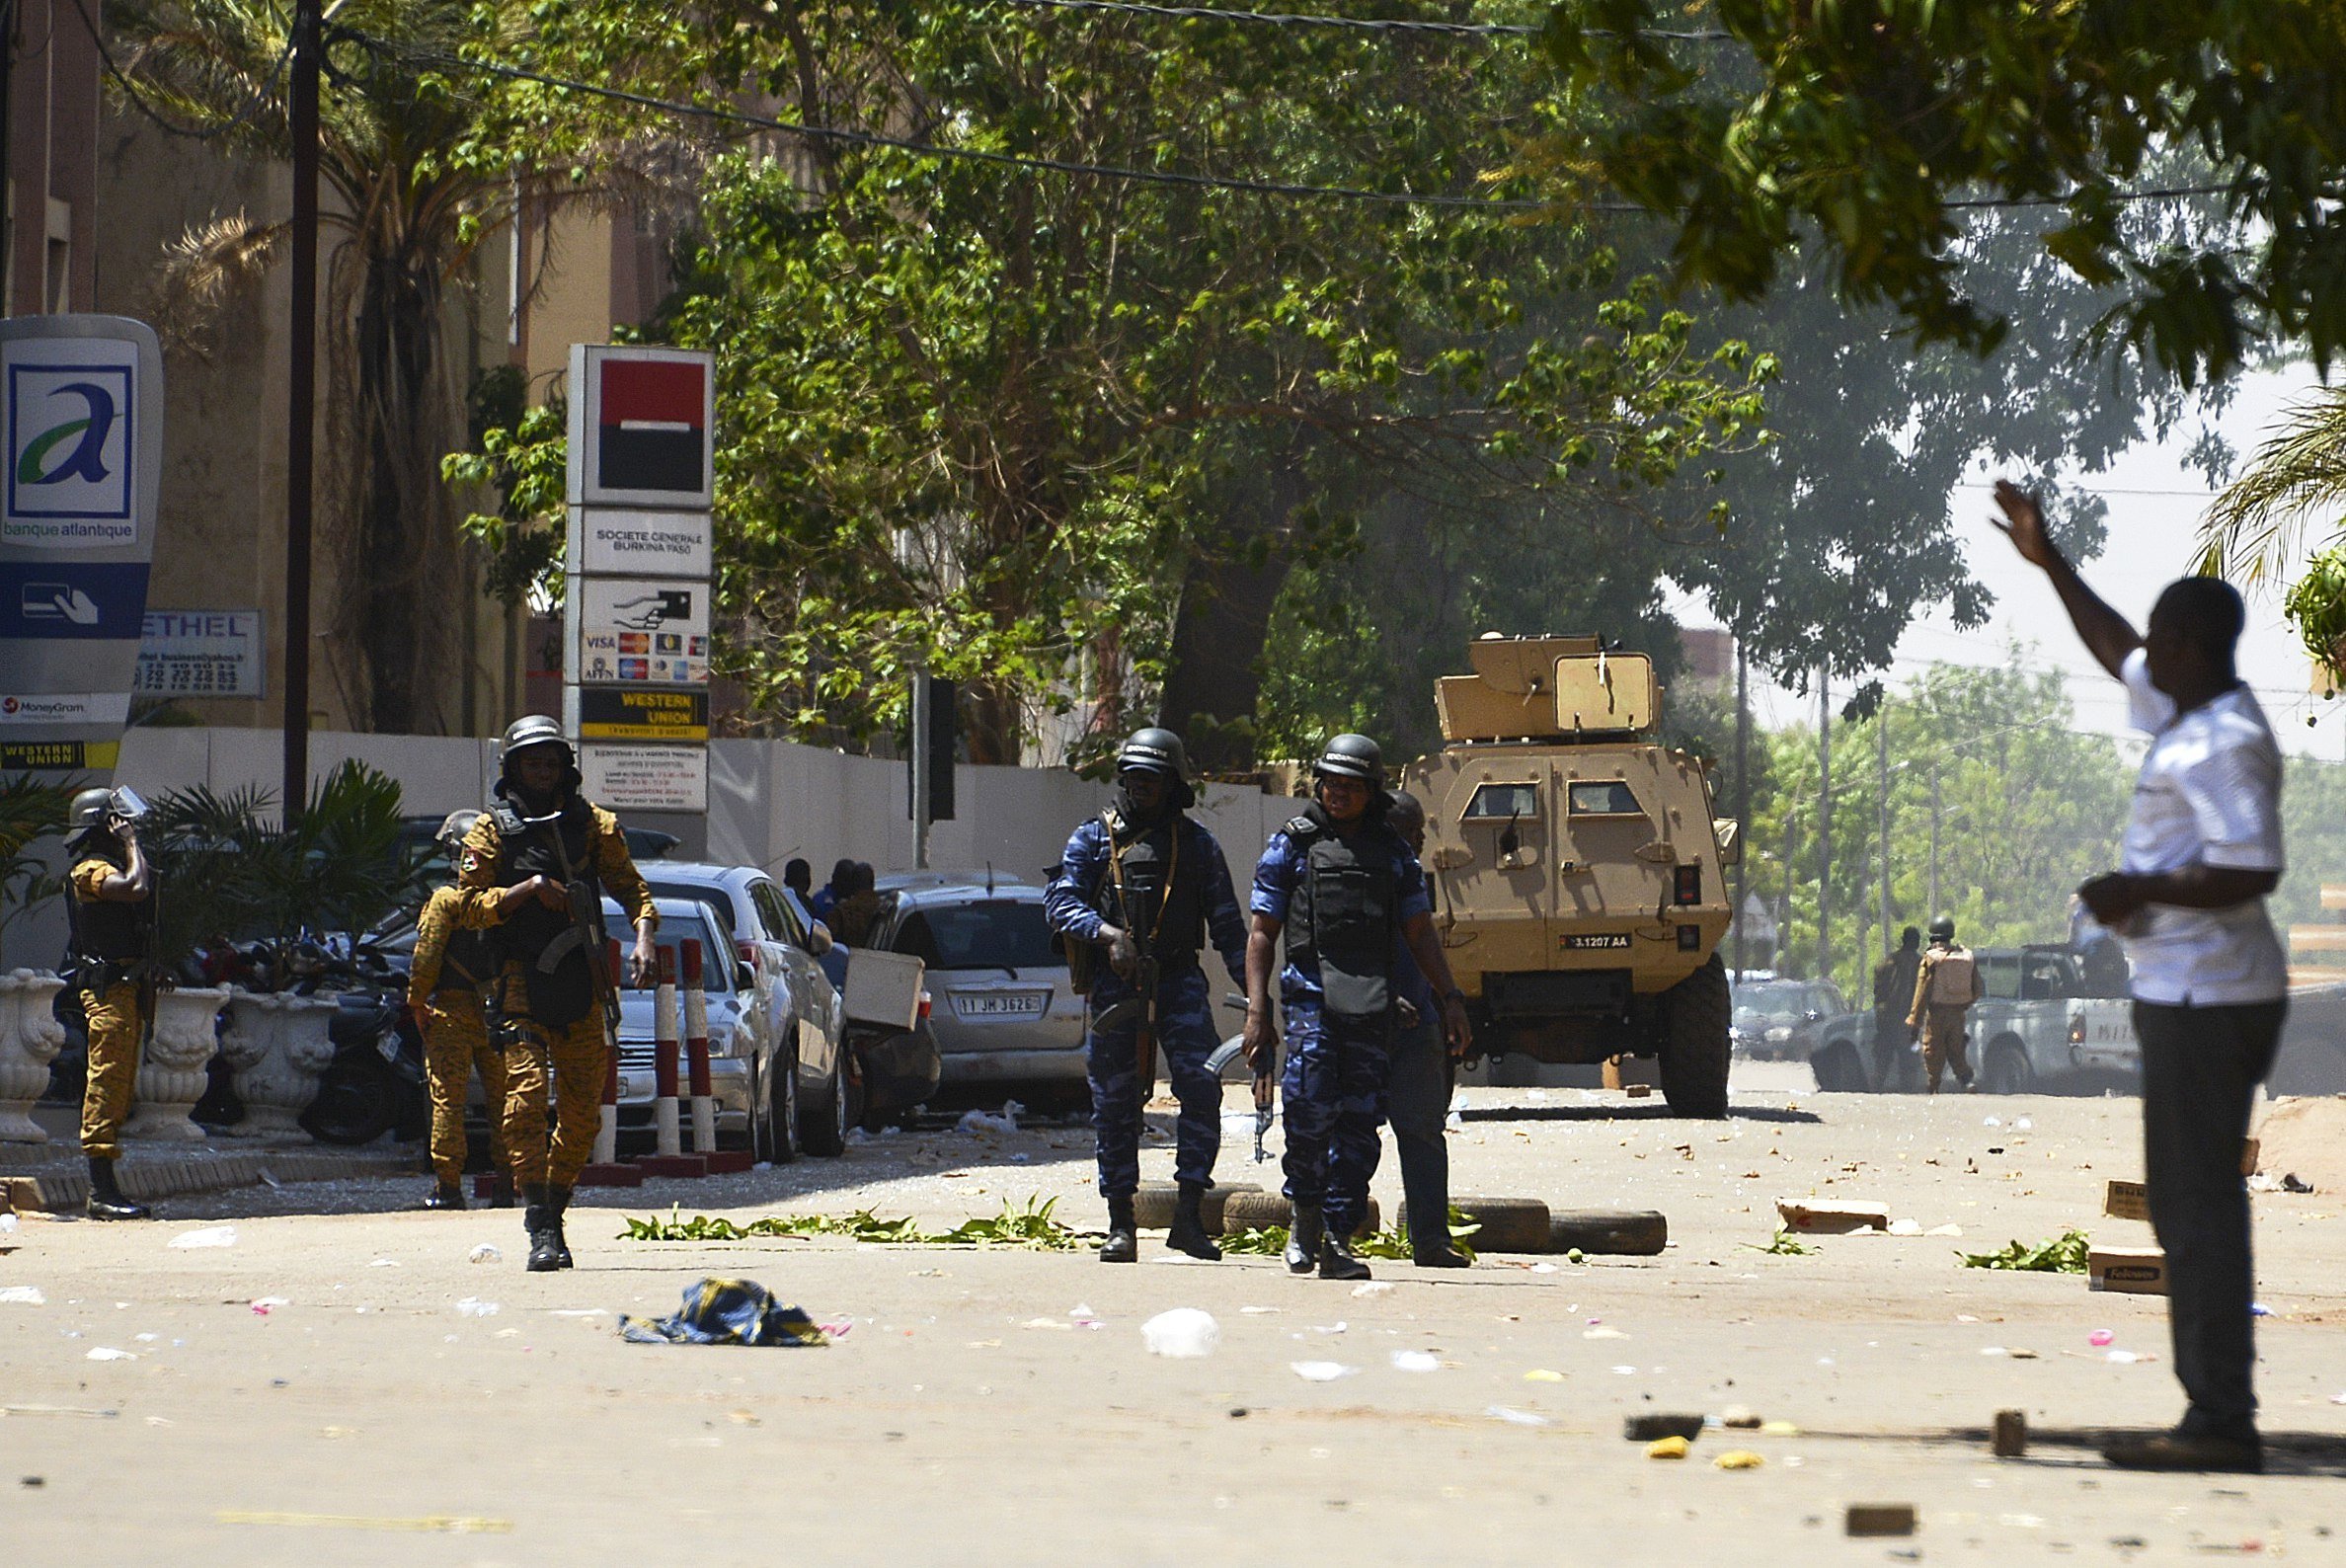 Un atac terrorista a la capital de Burkina Faso deixa 8 morts i 80 ferits